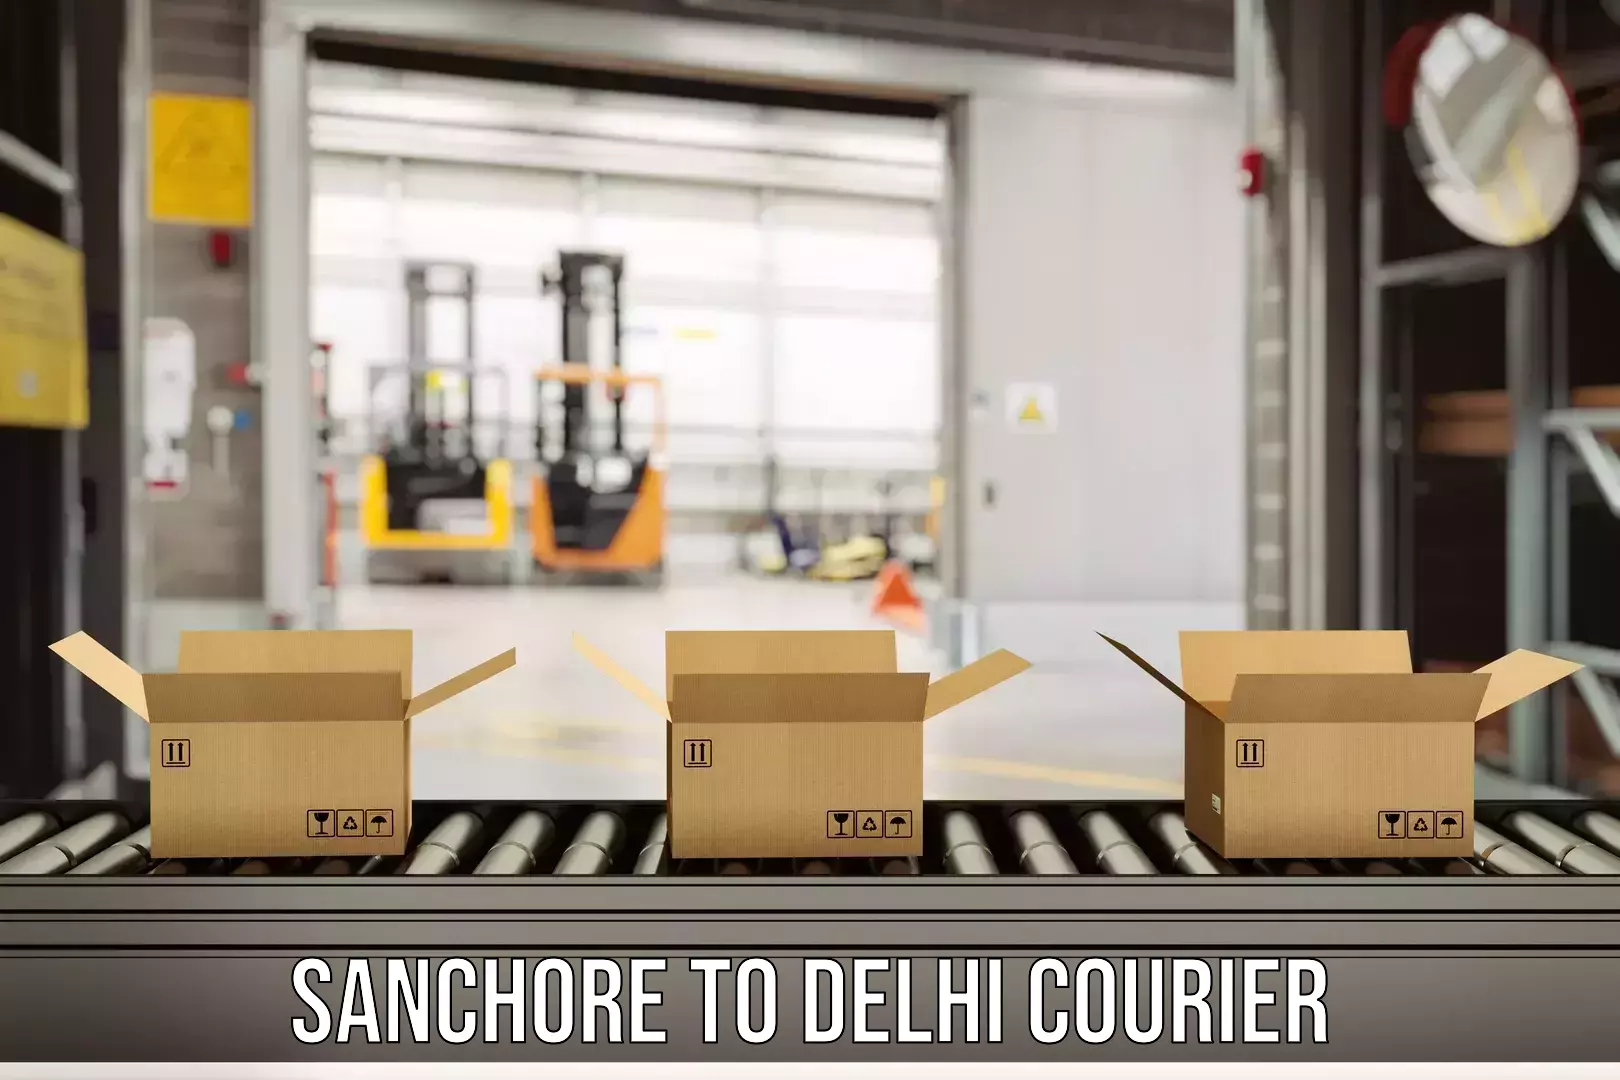 Courier service comparison Sanchore to Sarojini Nagar